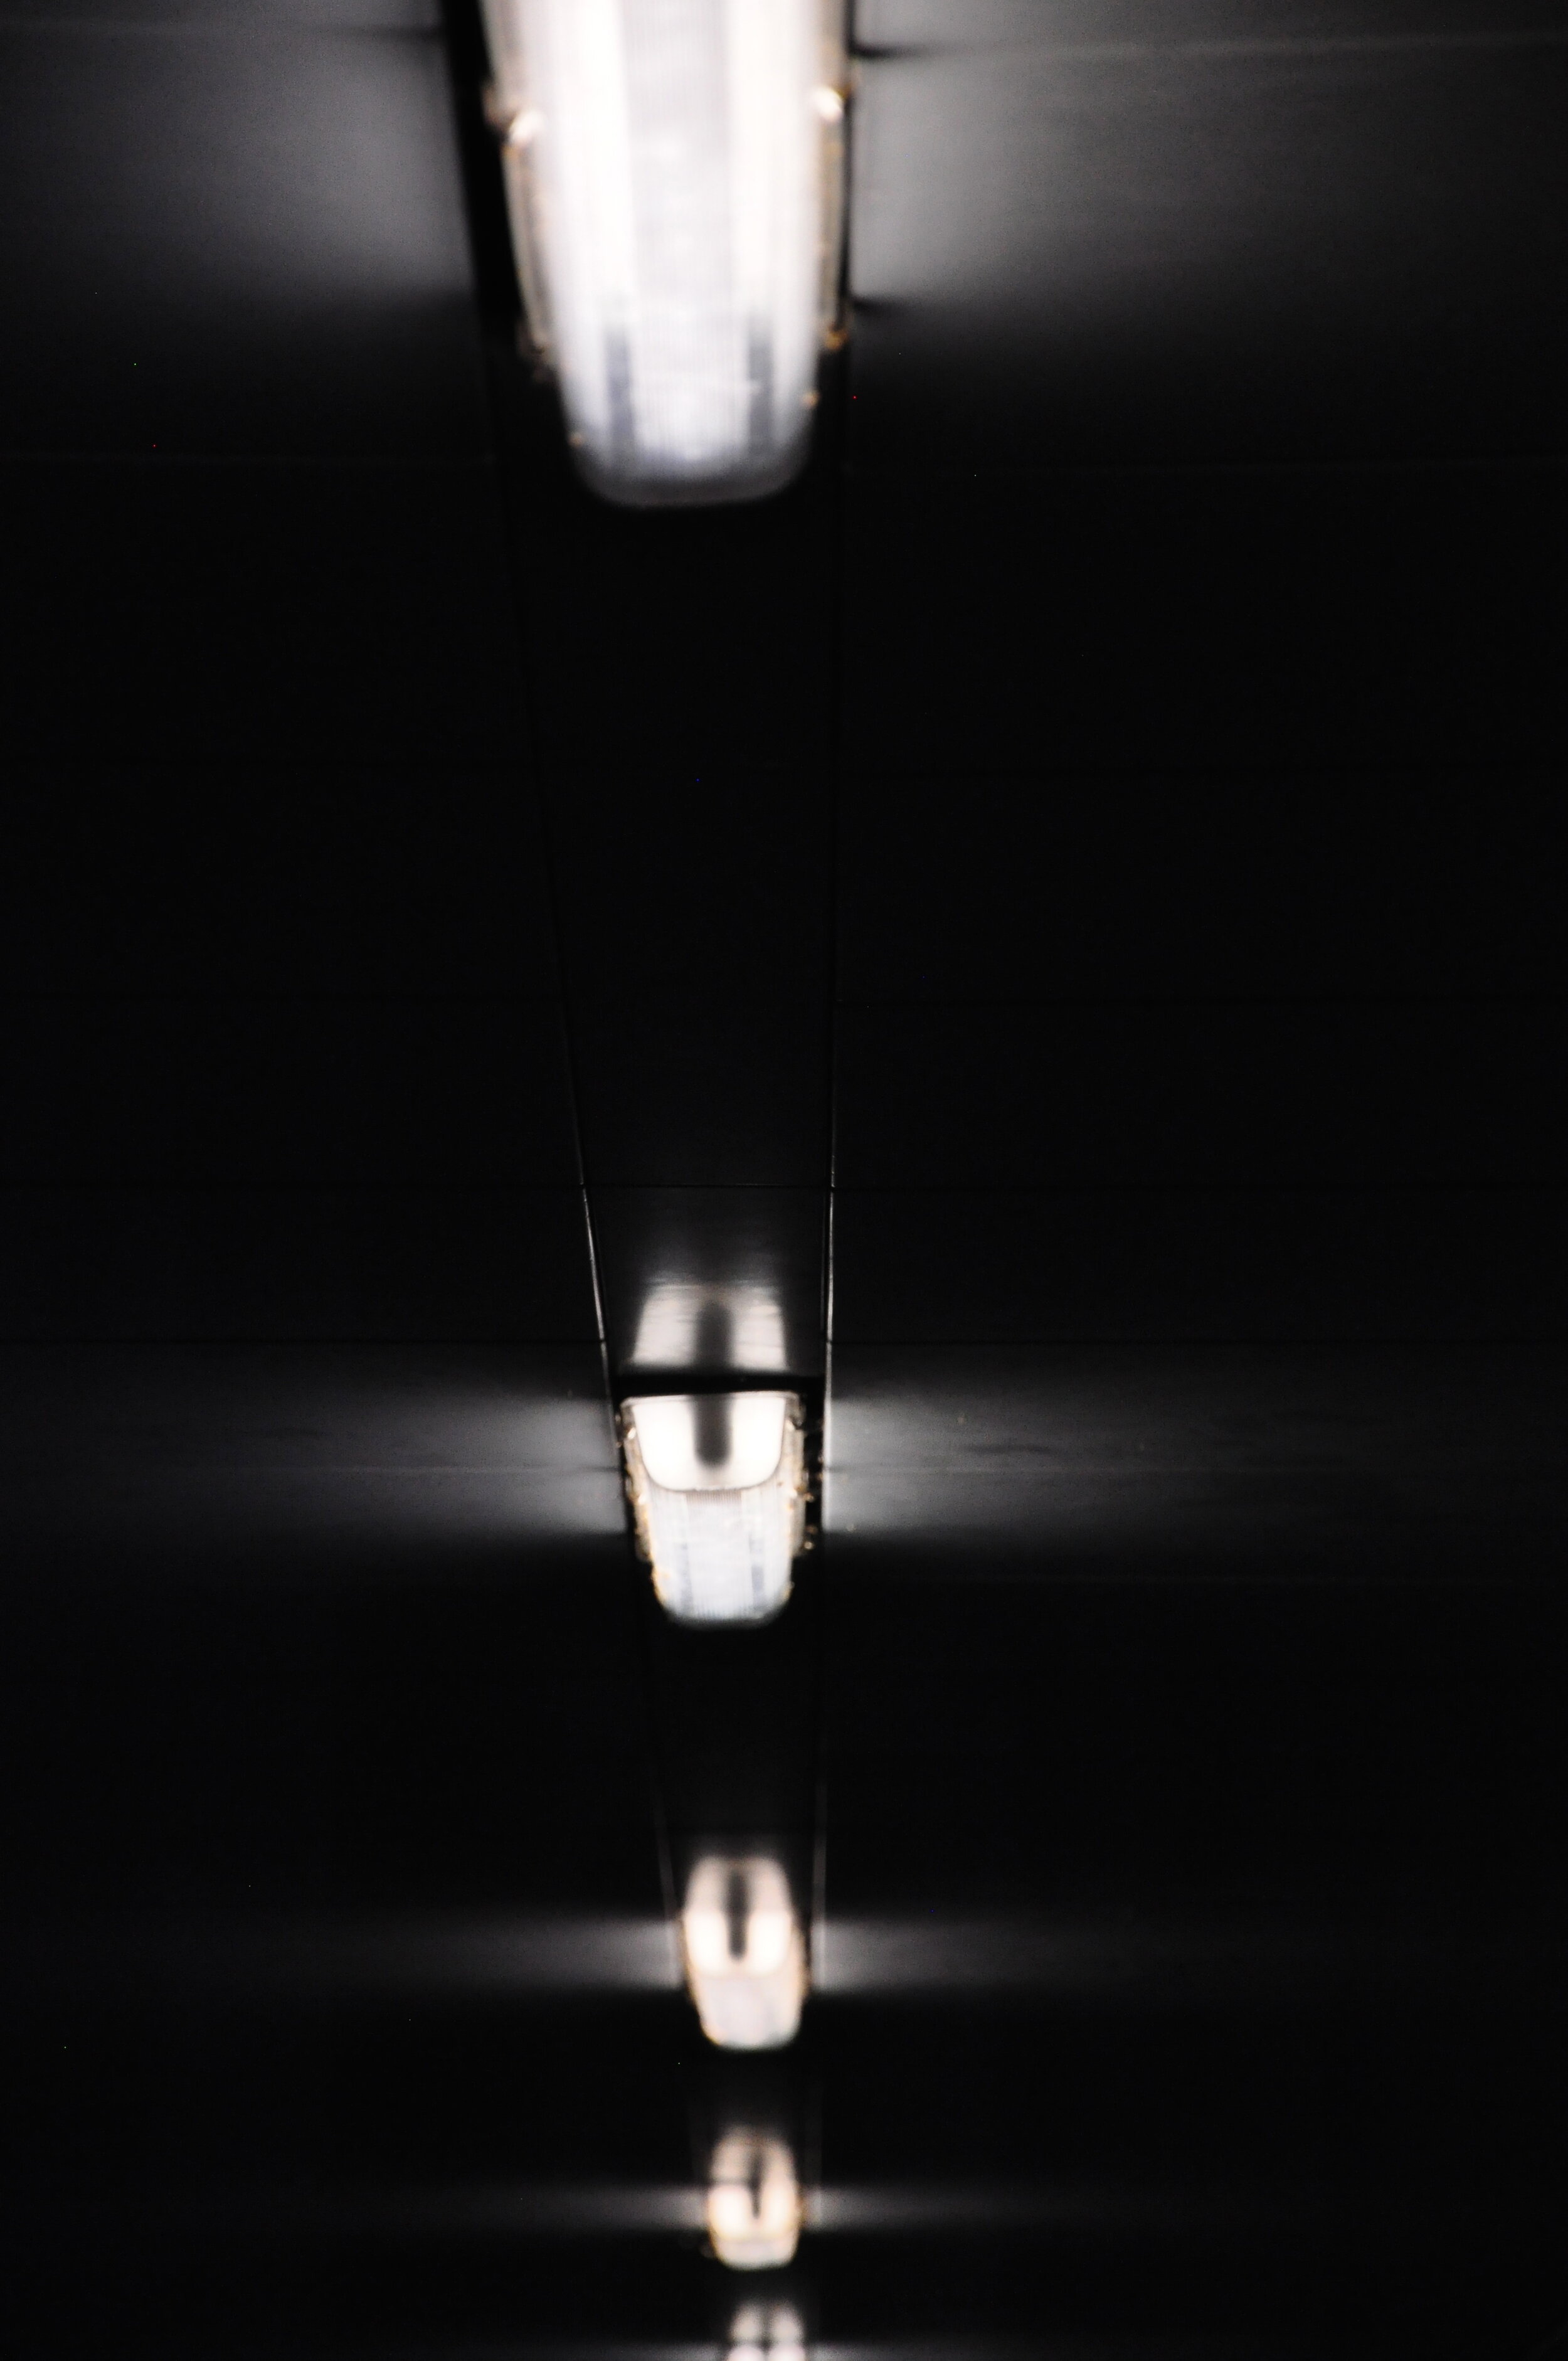 Light 02a, 2012 - Diptych